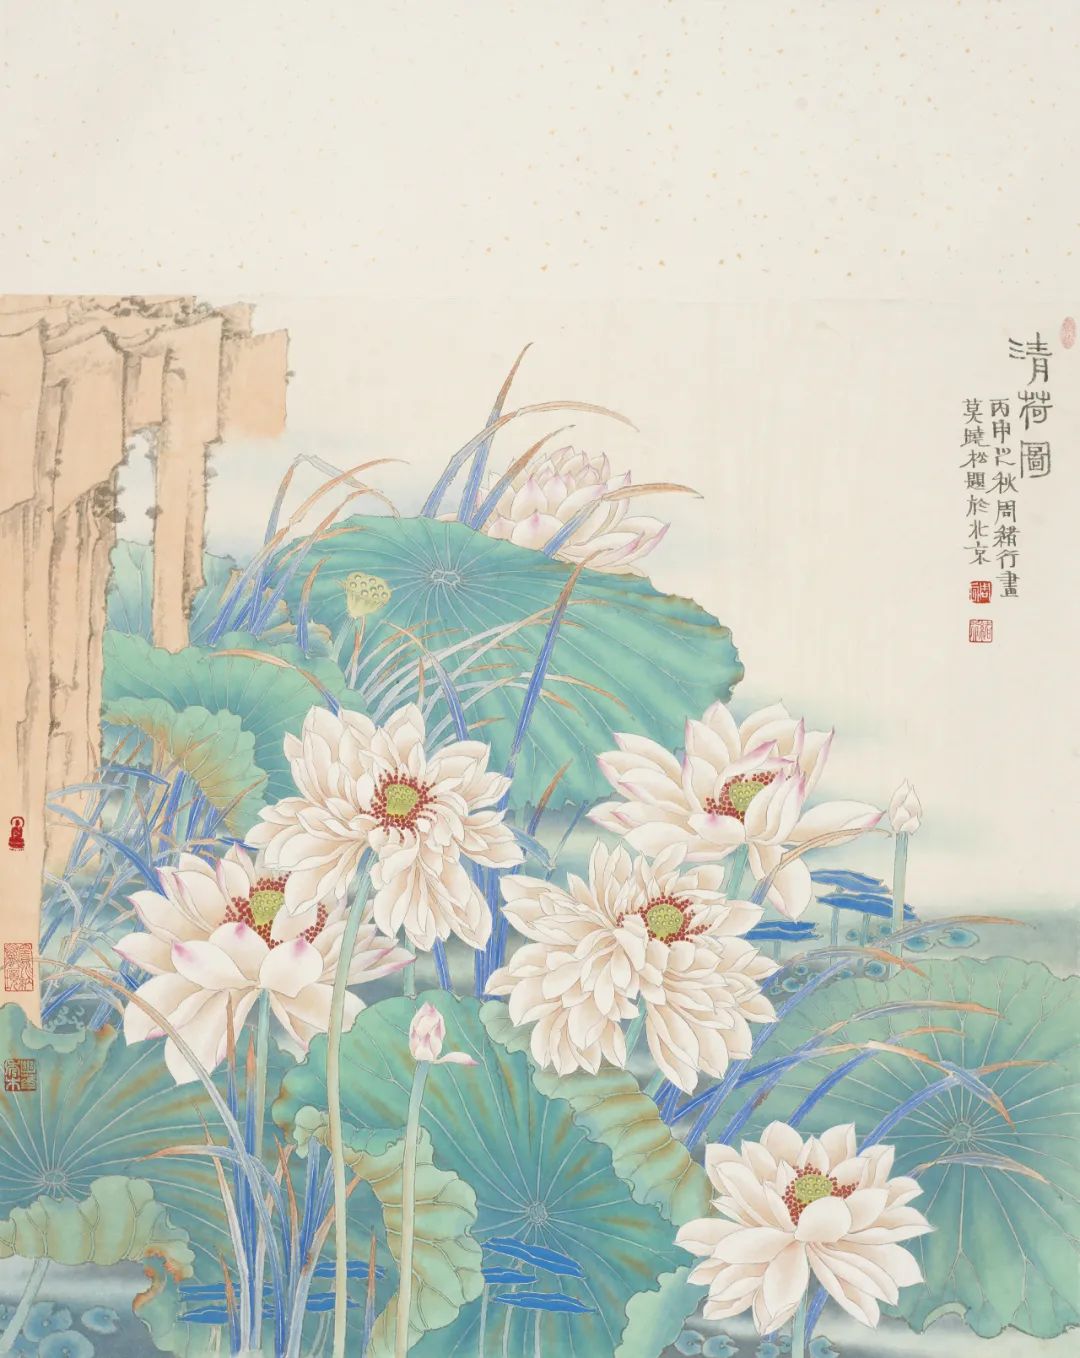 逸品典藏——中国当代艺术家周绪行作品集出版，共收录68幅精品力作